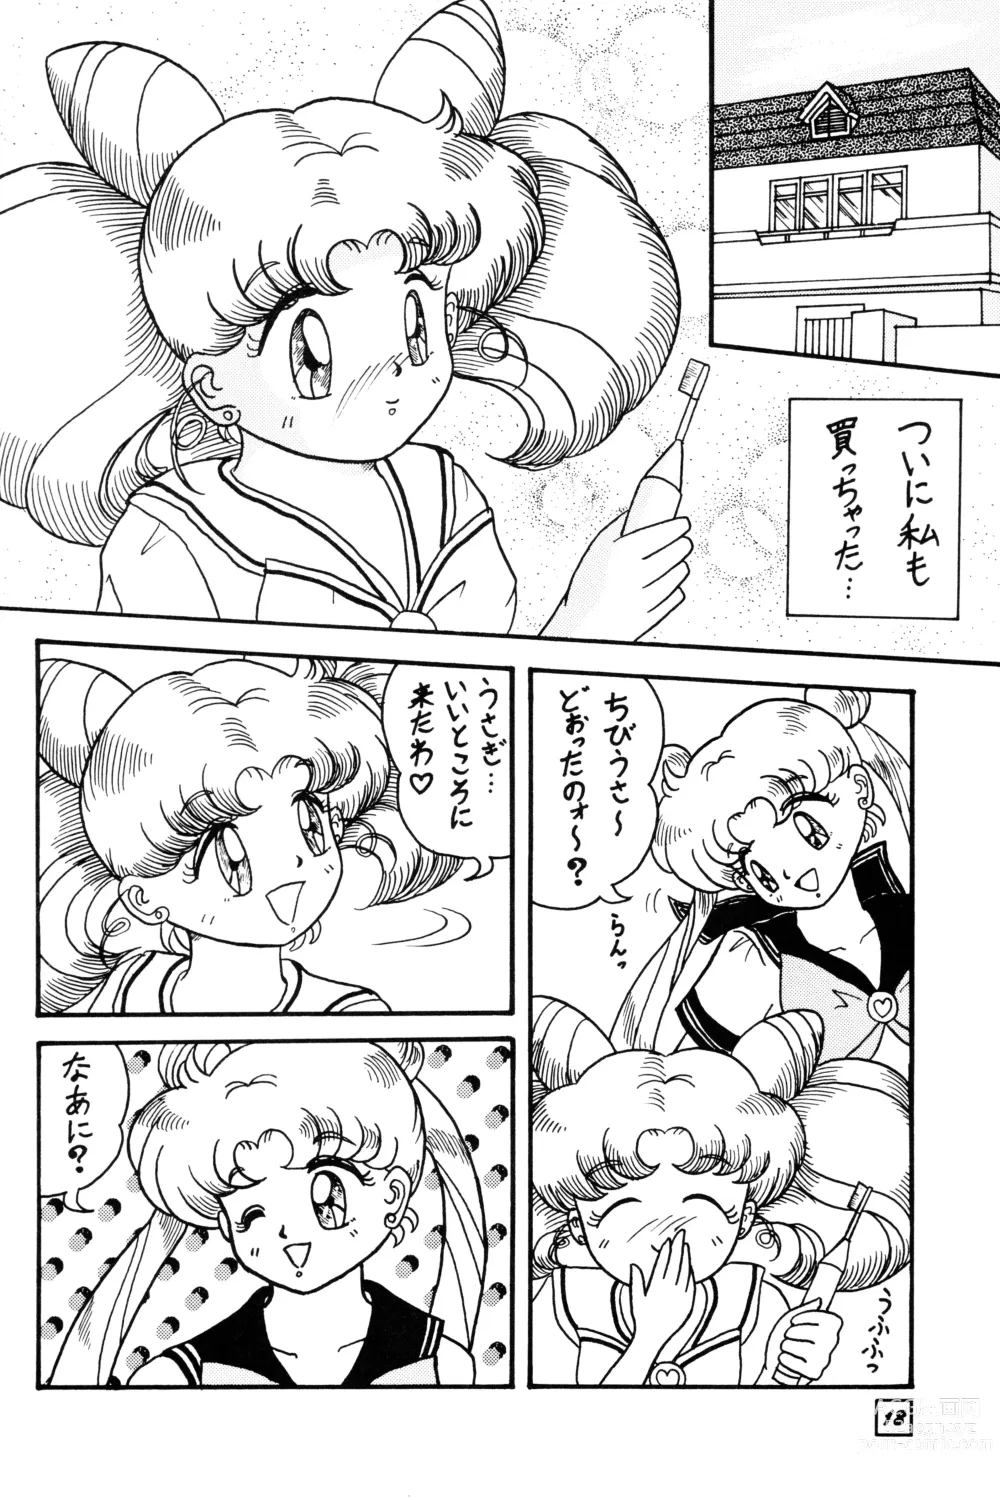 Page 17 of doujinshi SuMoMo